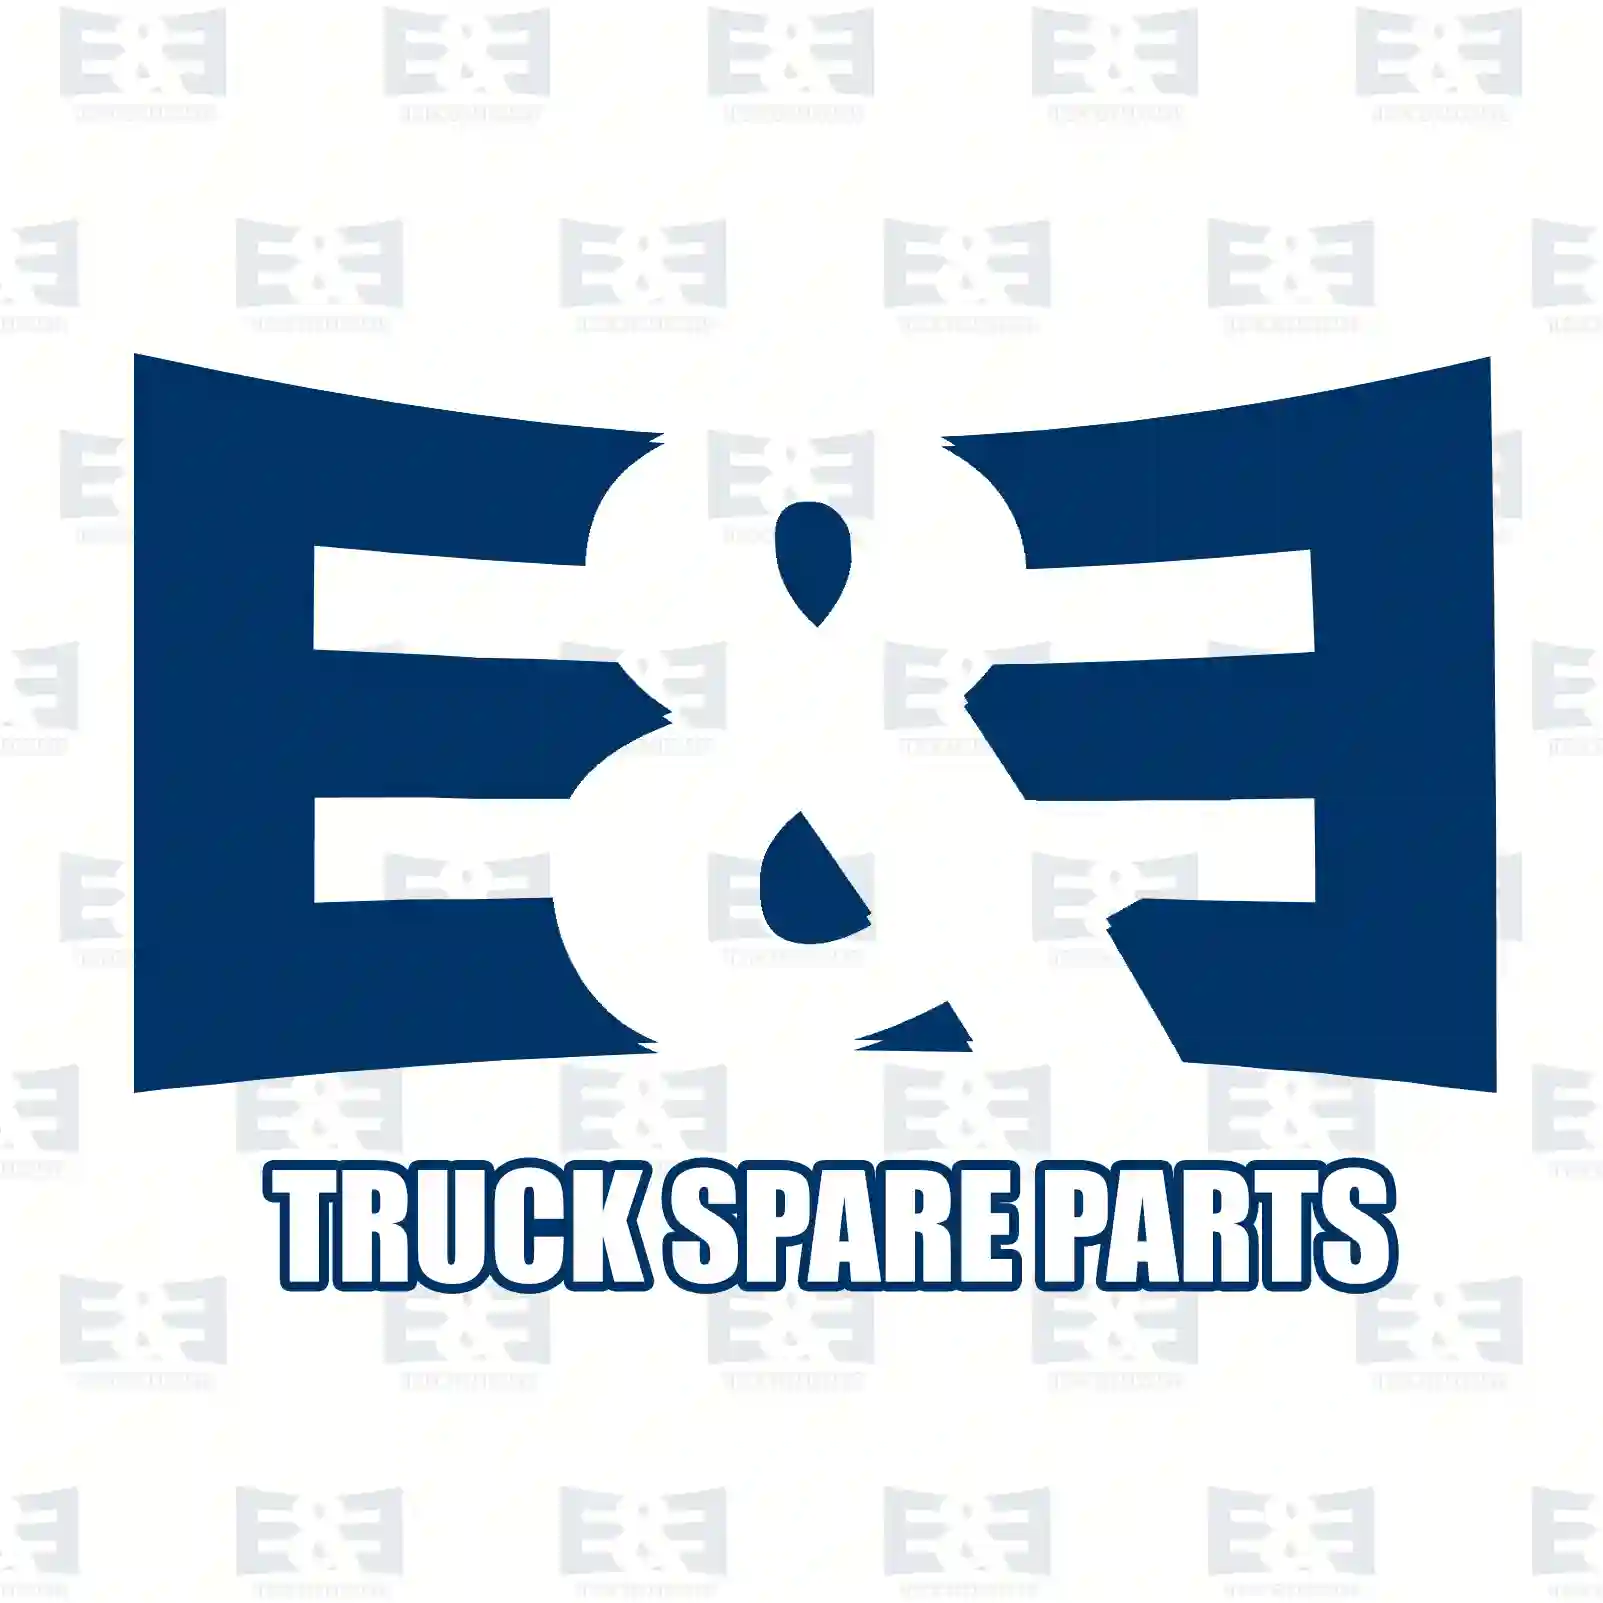 Nozzle holder, 2E2286658, 51101007430, 51101007453, 51101009453 ||  2E2286658 E&E Truck Spare Parts | Truck Spare Parts, Auotomotive Spare Parts Nozzle holder, 2E2286658, 51101007430, 51101007453, 51101009453 ||  2E2286658 E&E Truck Spare Parts | Truck Spare Parts, Auotomotive Spare Parts